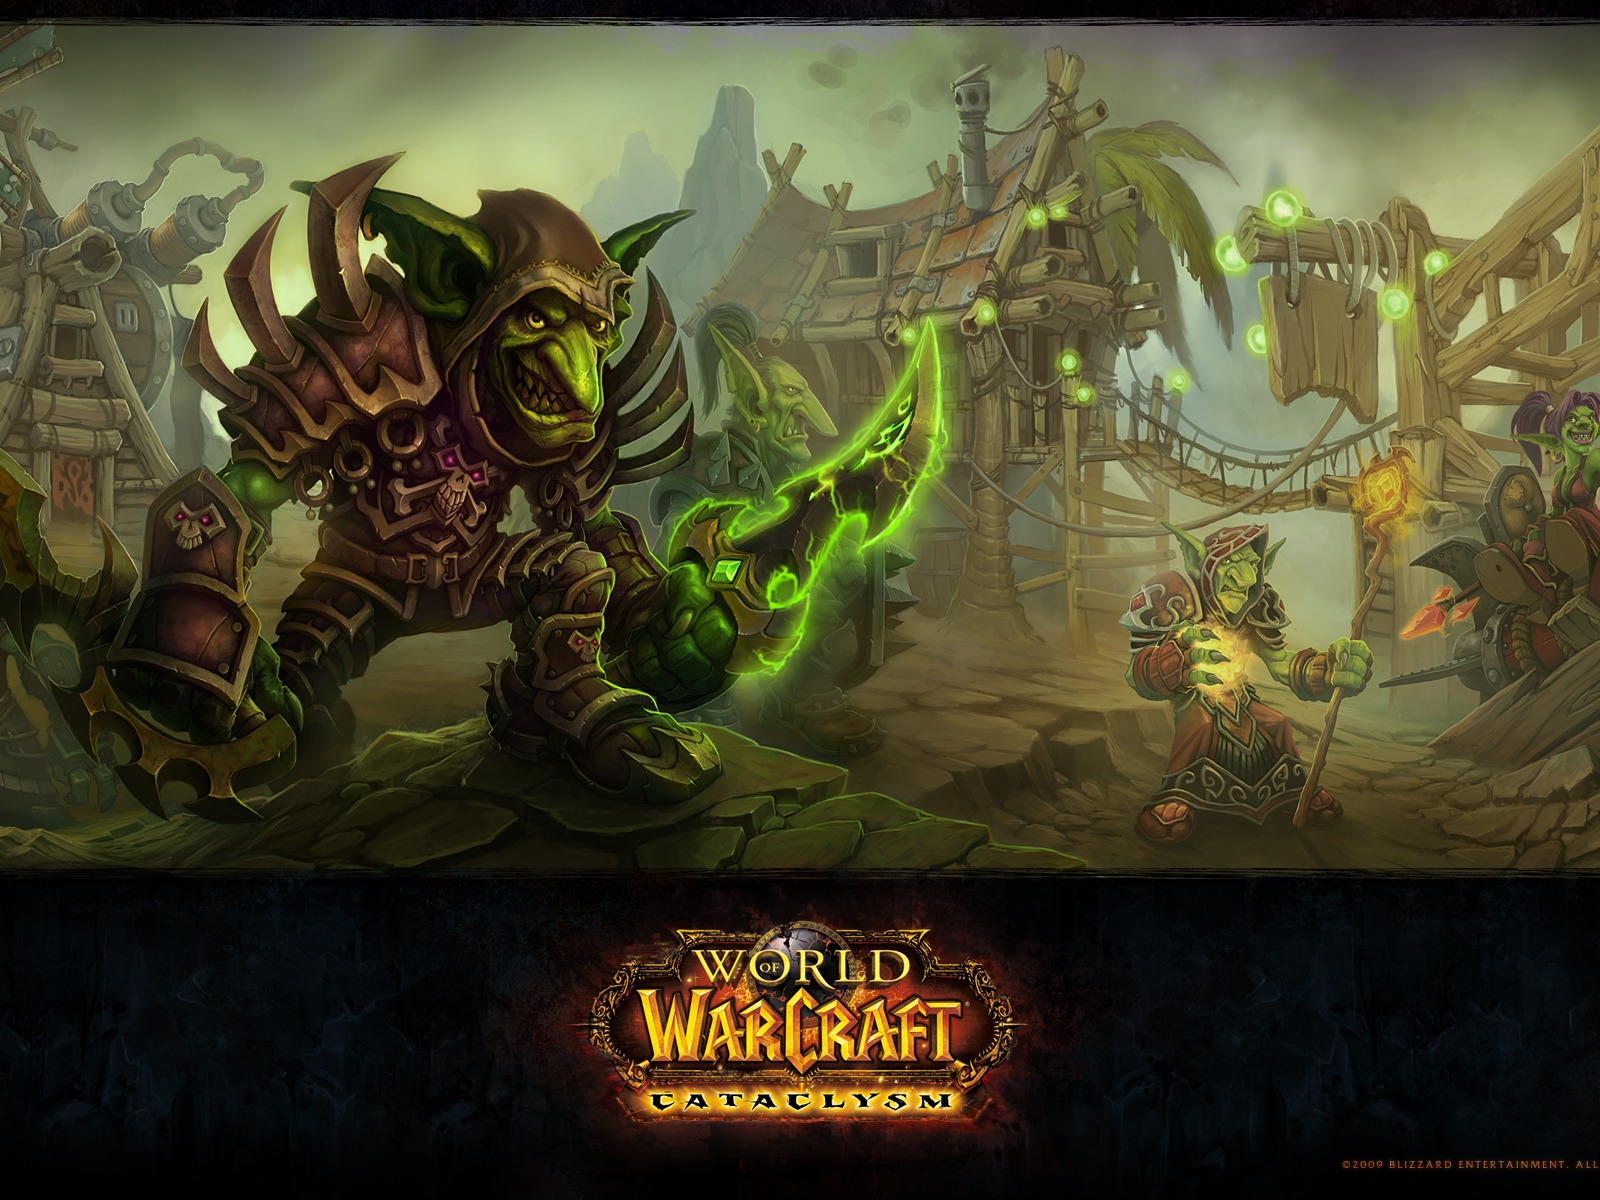 World of Warcraft 魔獸世界高清壁紙(二) #9 - 1600x1200